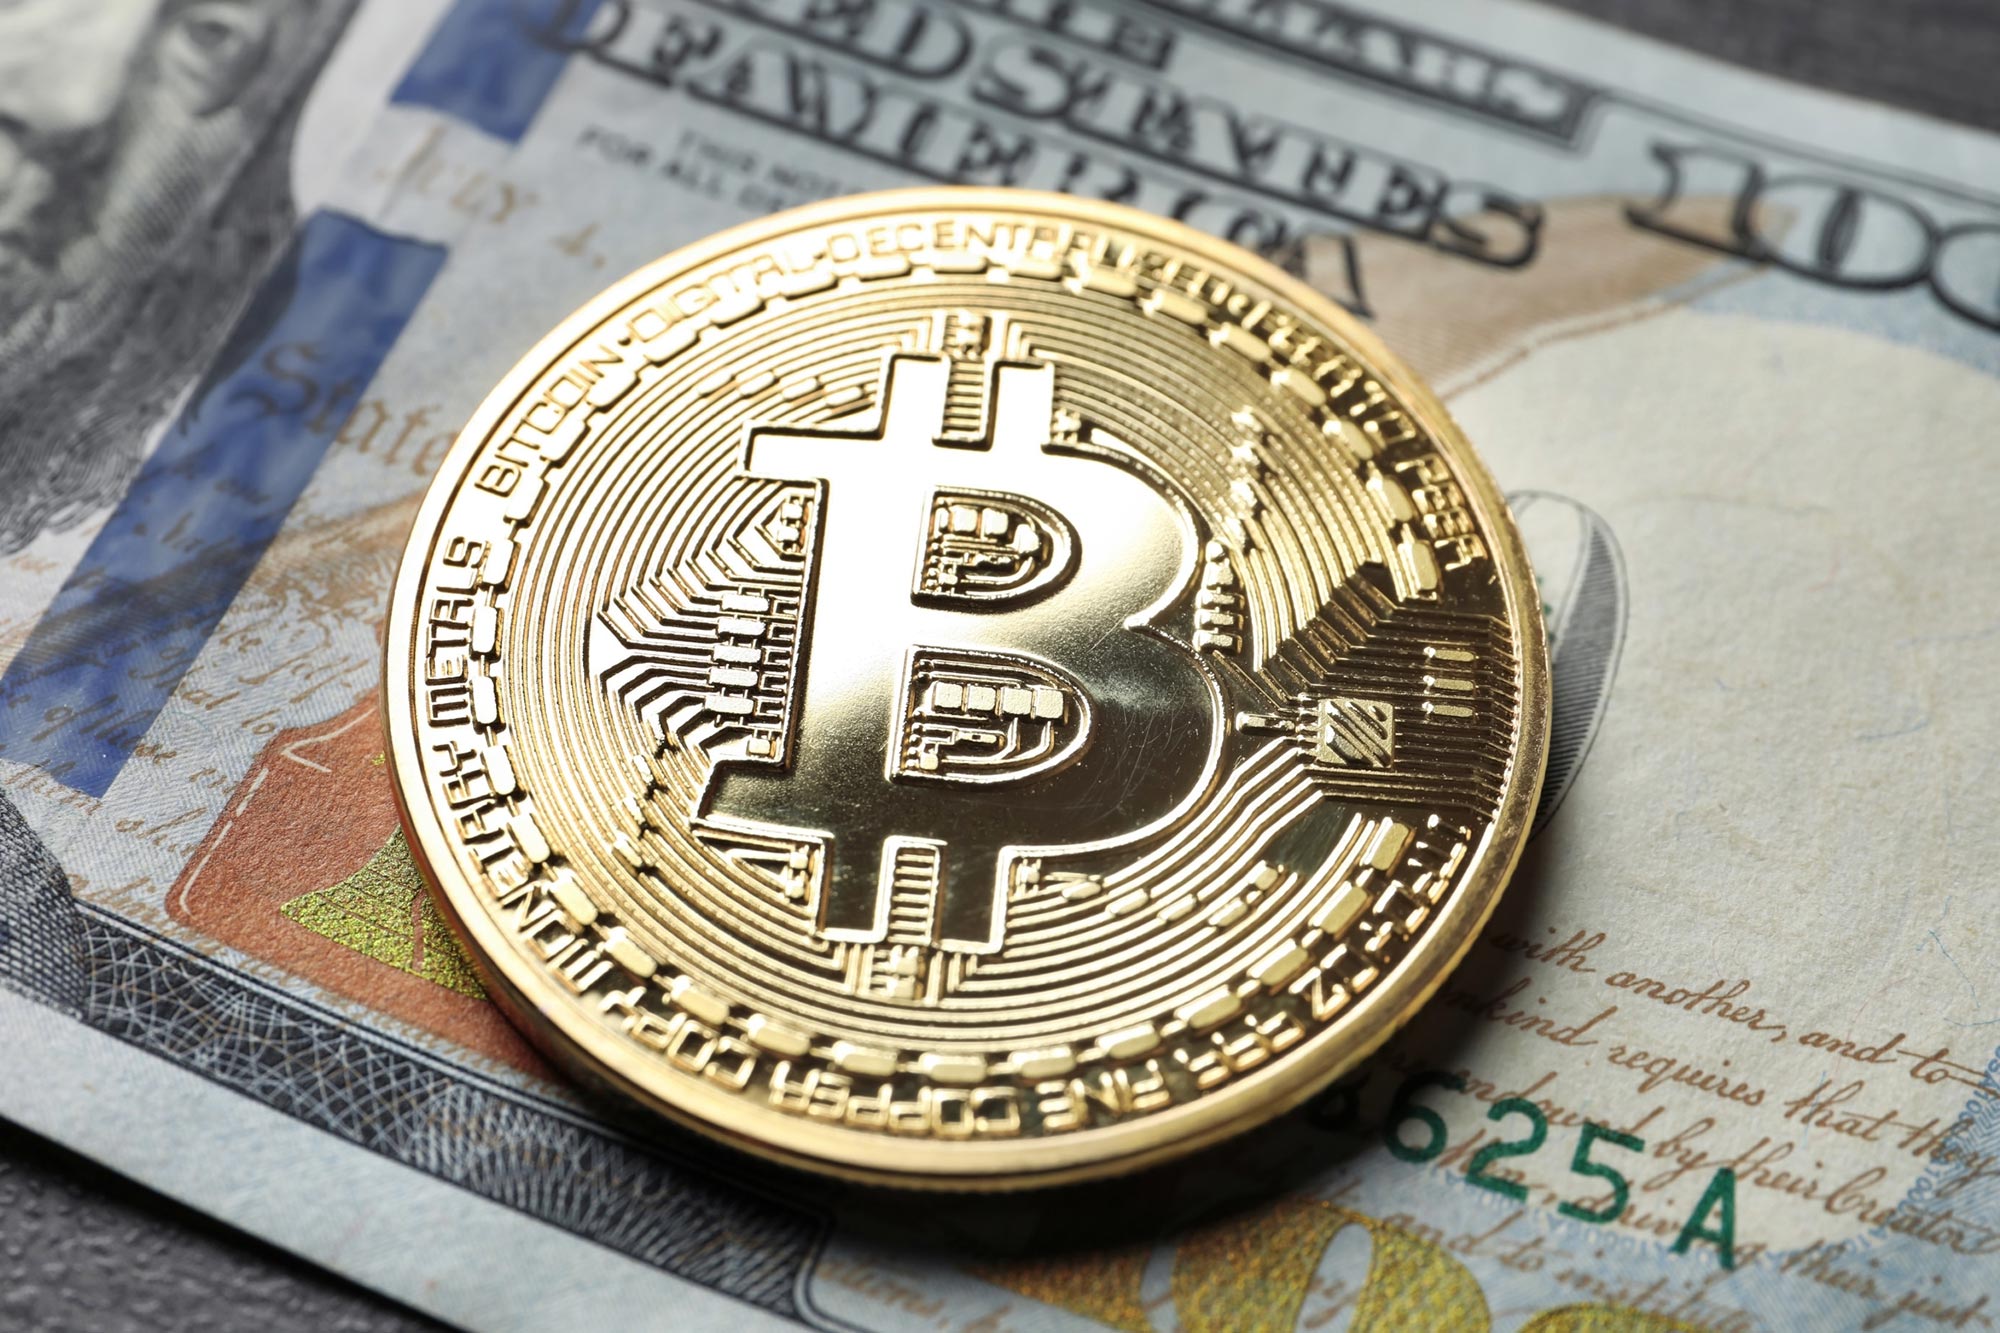 Paraguay - quốc gia đưa Bitcoin thành phương tiện thanh toán hợp pháp